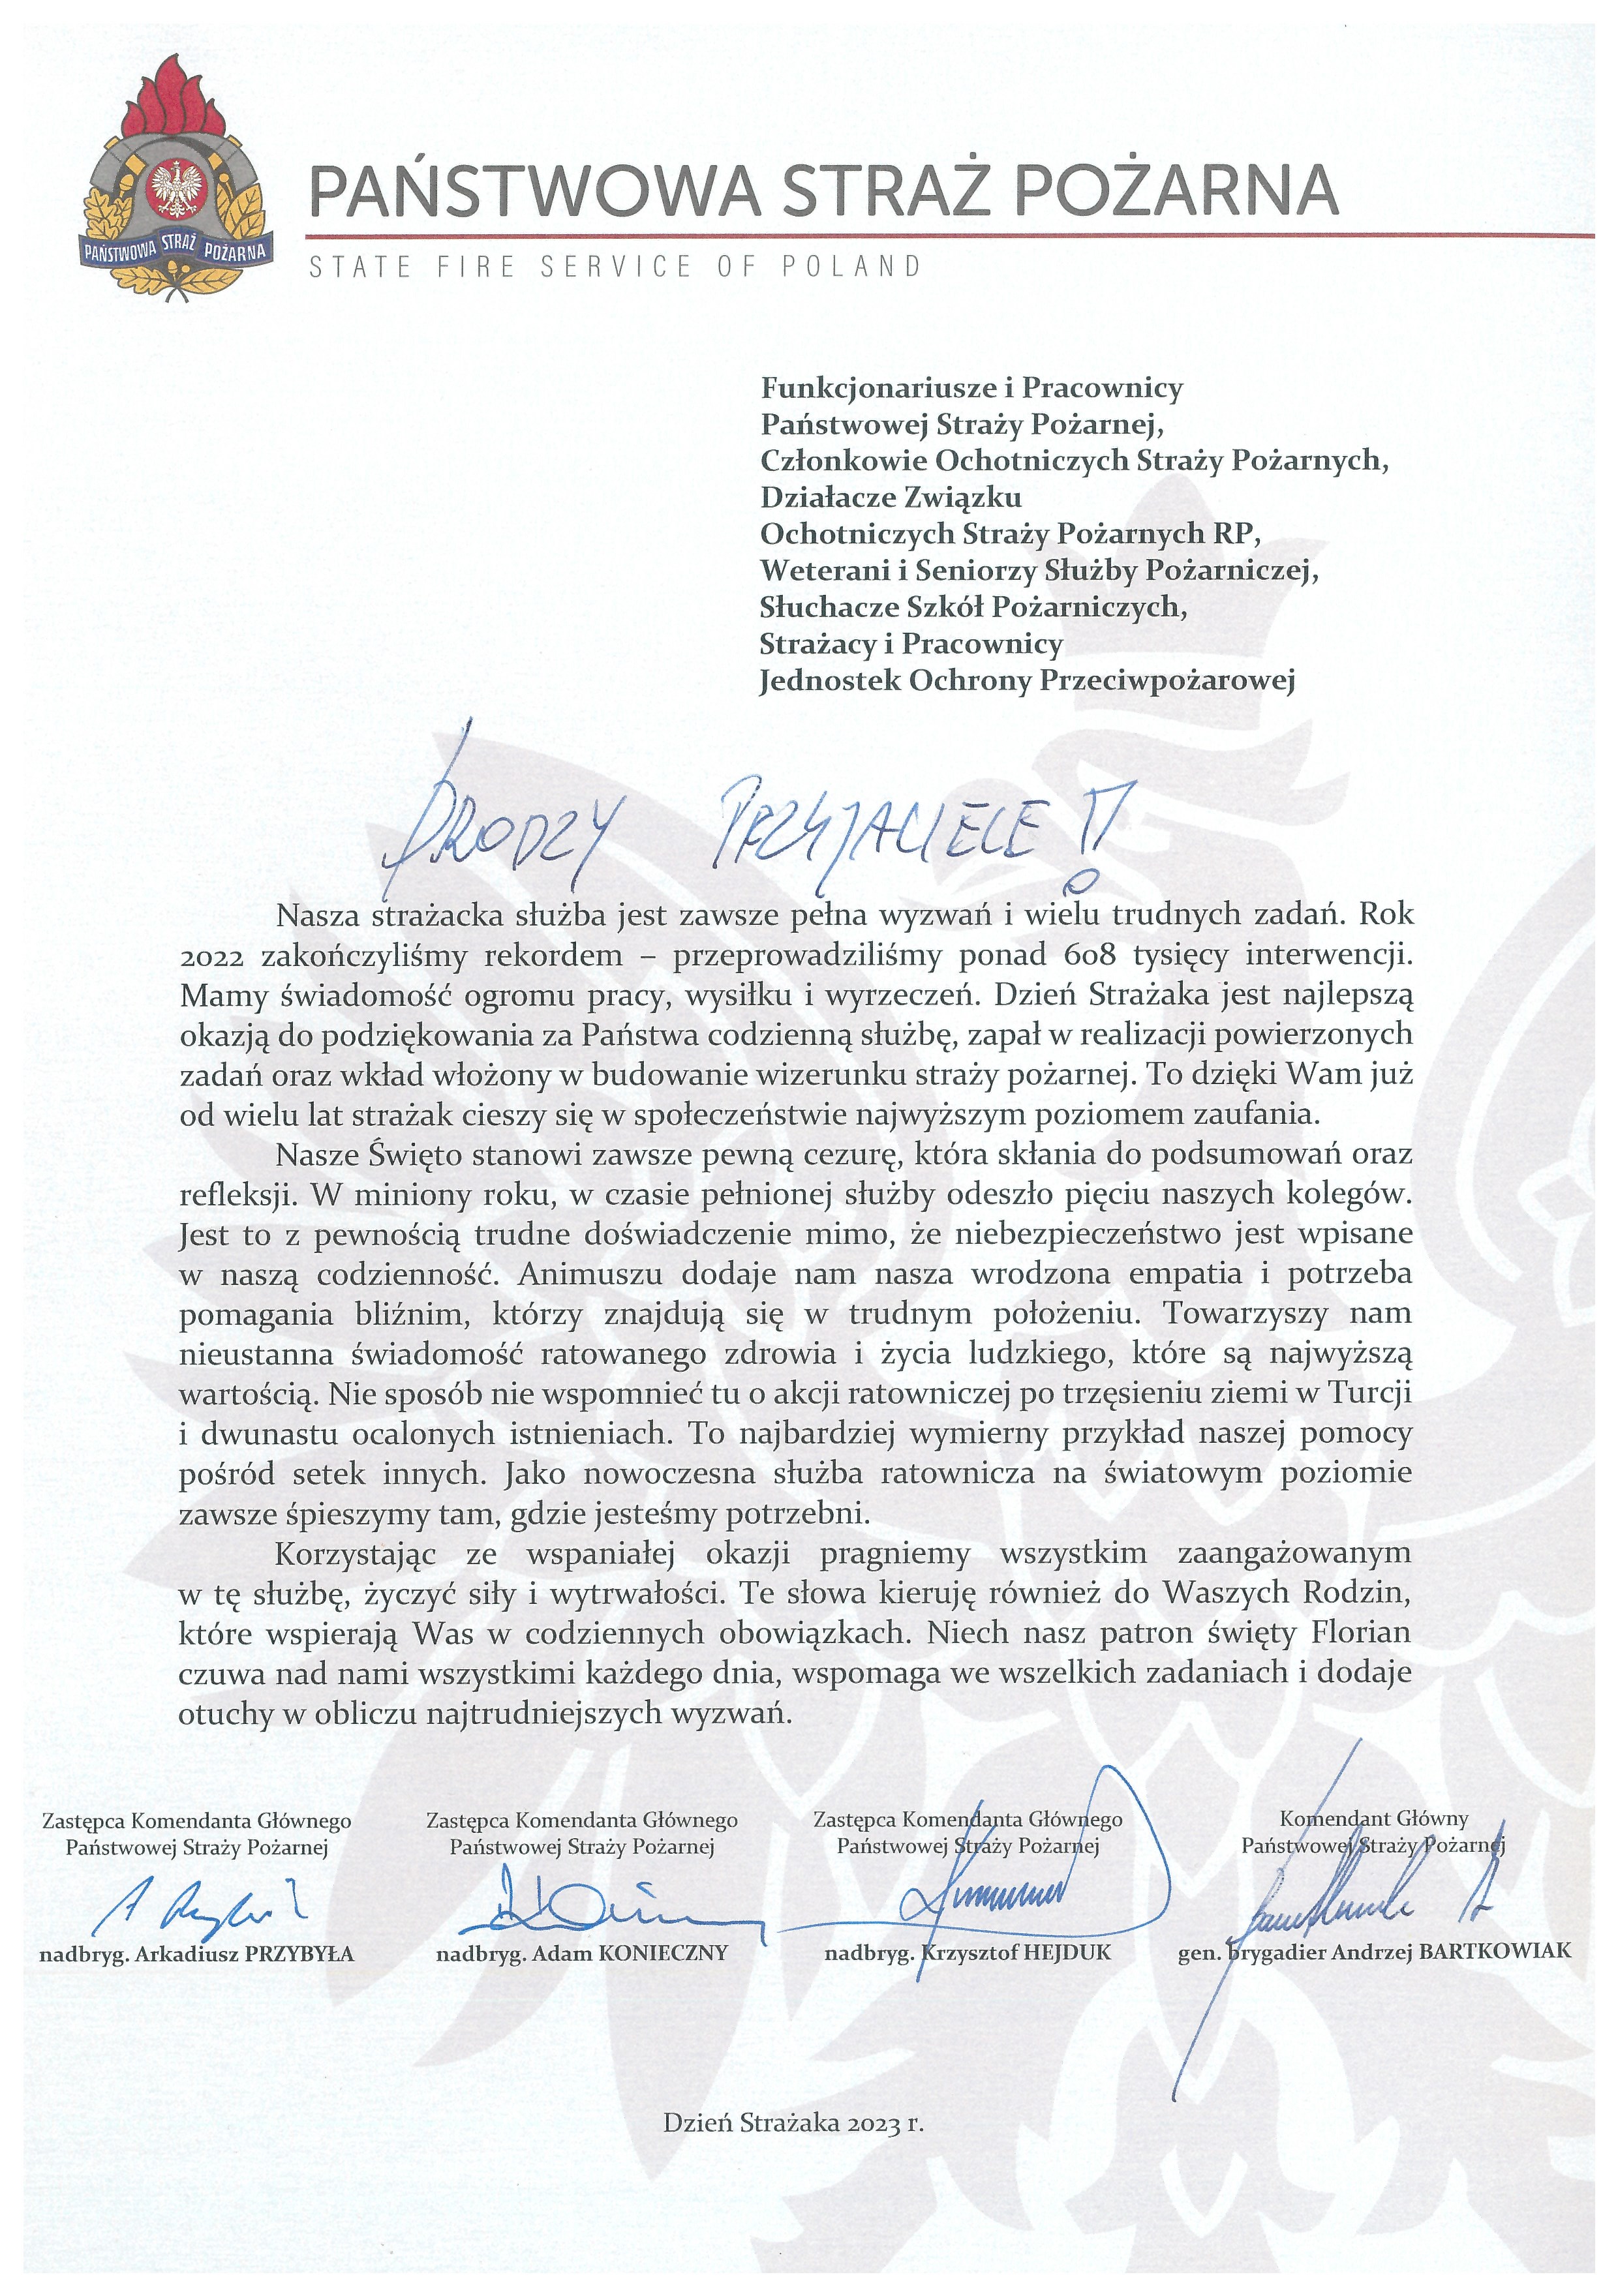 Na zdjęciu widzimy list z życzeniami od Komendanta Głównego PSP wraz z zastępcami.